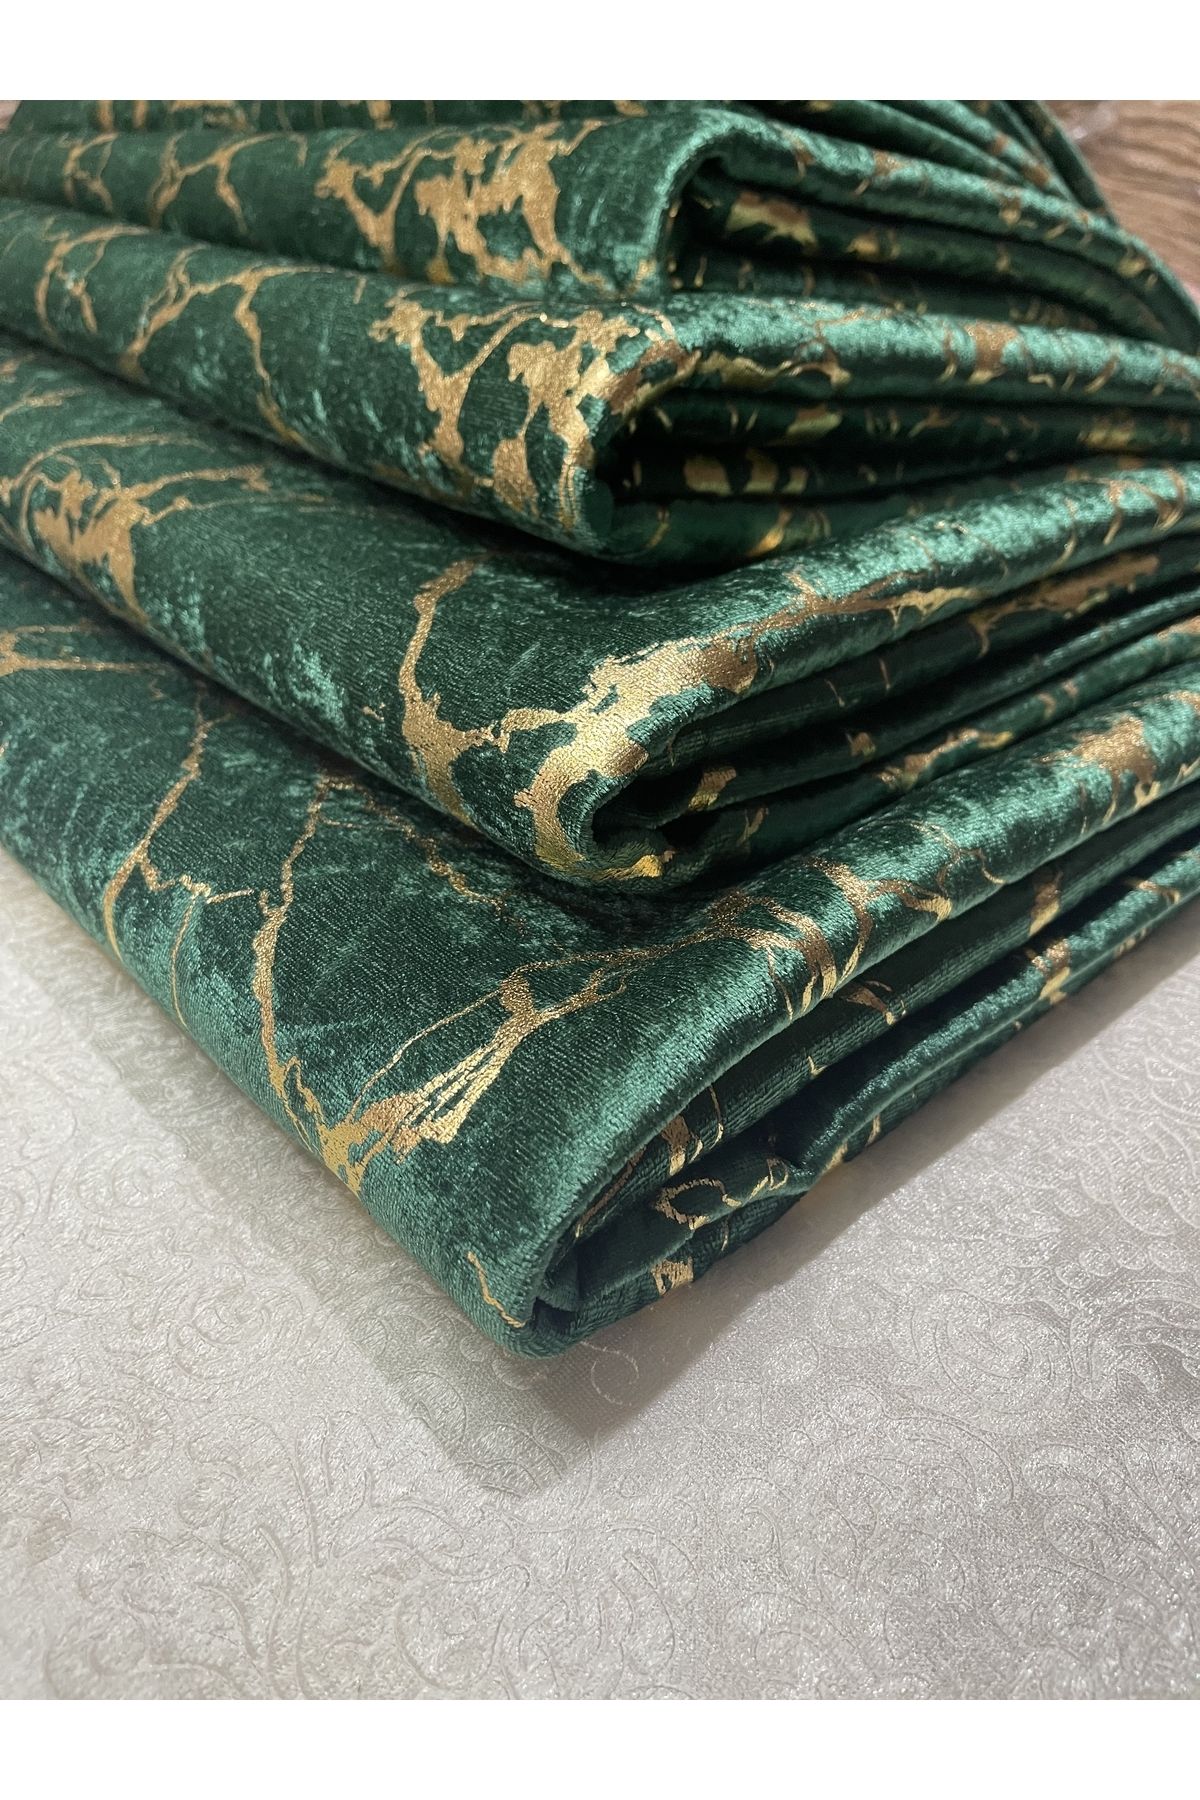 Tekstilsa Koltuk Çekyat Örtüsü Yeni Moda Altın Varaklı Dekoratif Haki Yeşil Zemin Süngerli Koltuk Örtüsü 1adet